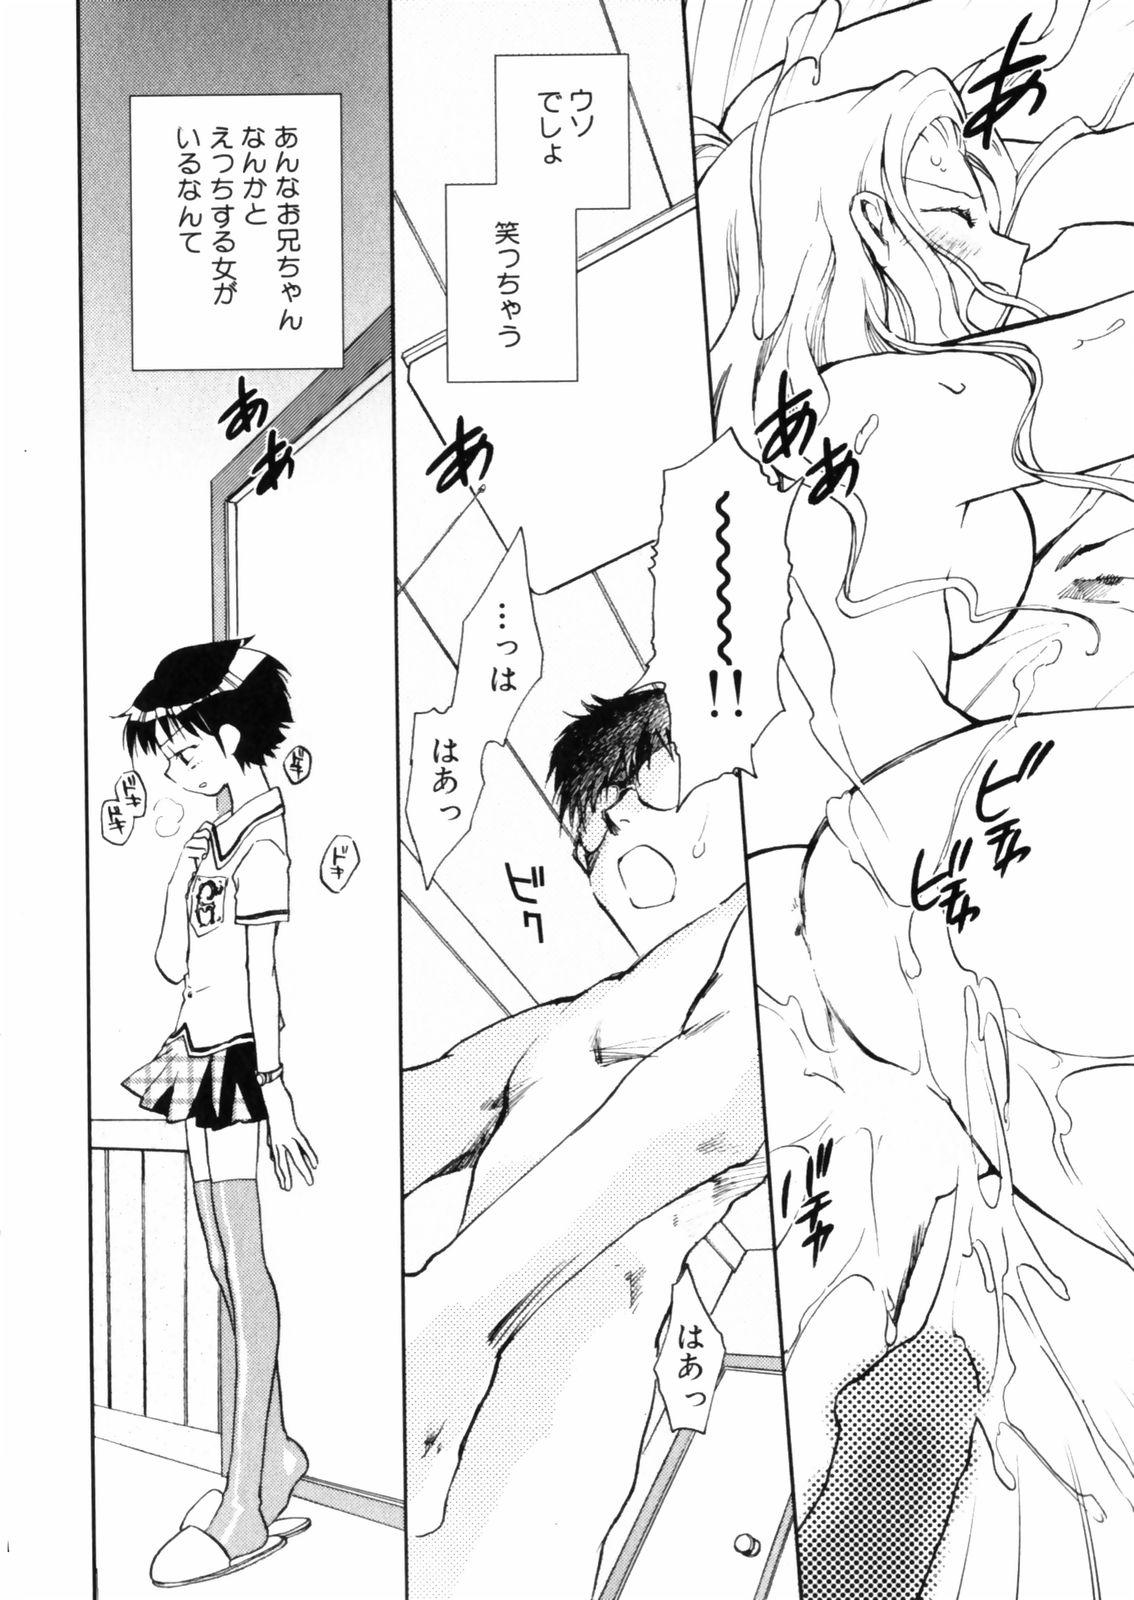 [Okano Ahiru] Hanasake ! Otome Juku (Otome Private Tutoring School) Vol.2 139